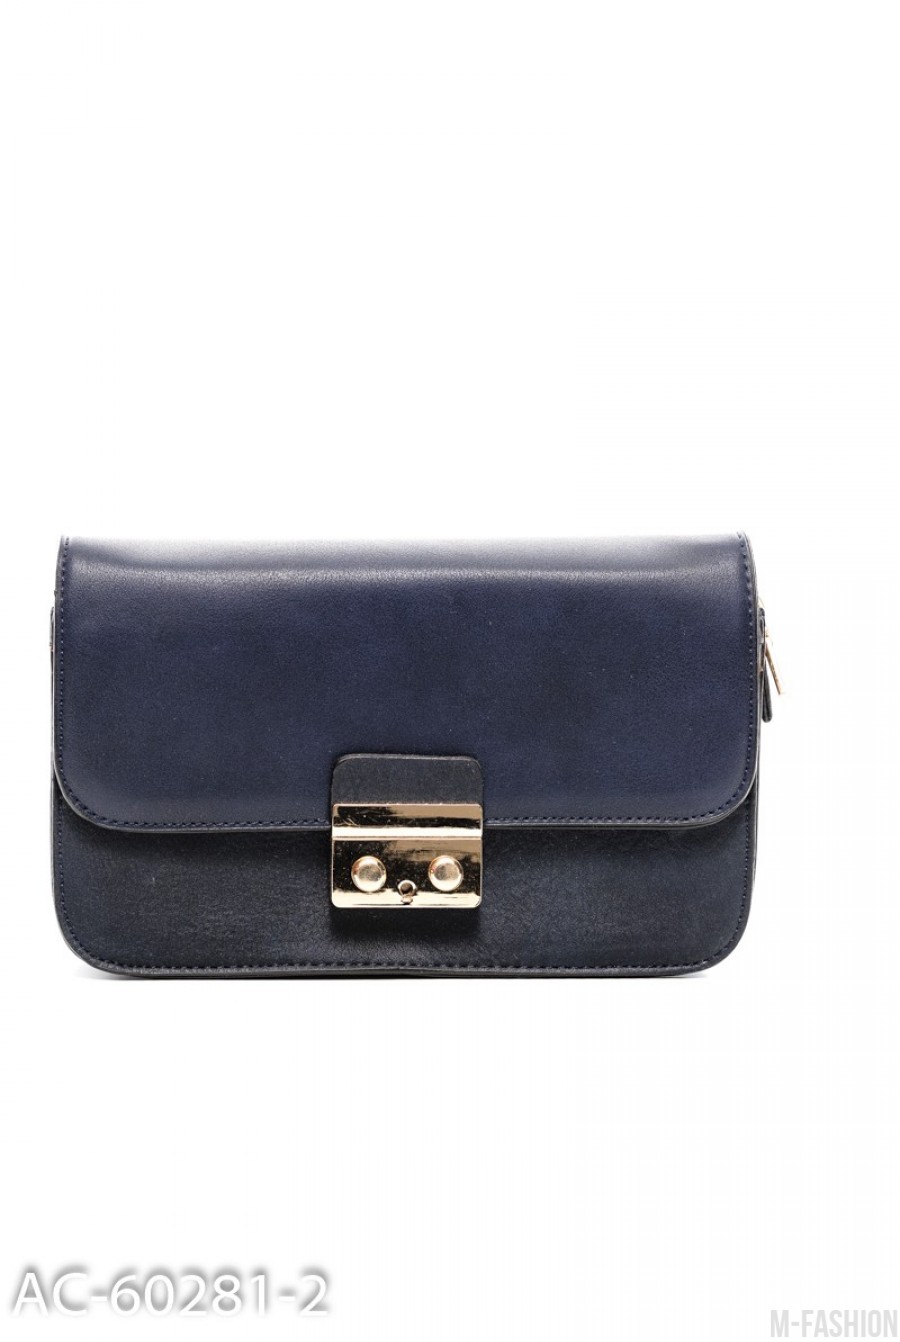 Темно-синяя сумочка с золотистым замочком - Фото 1